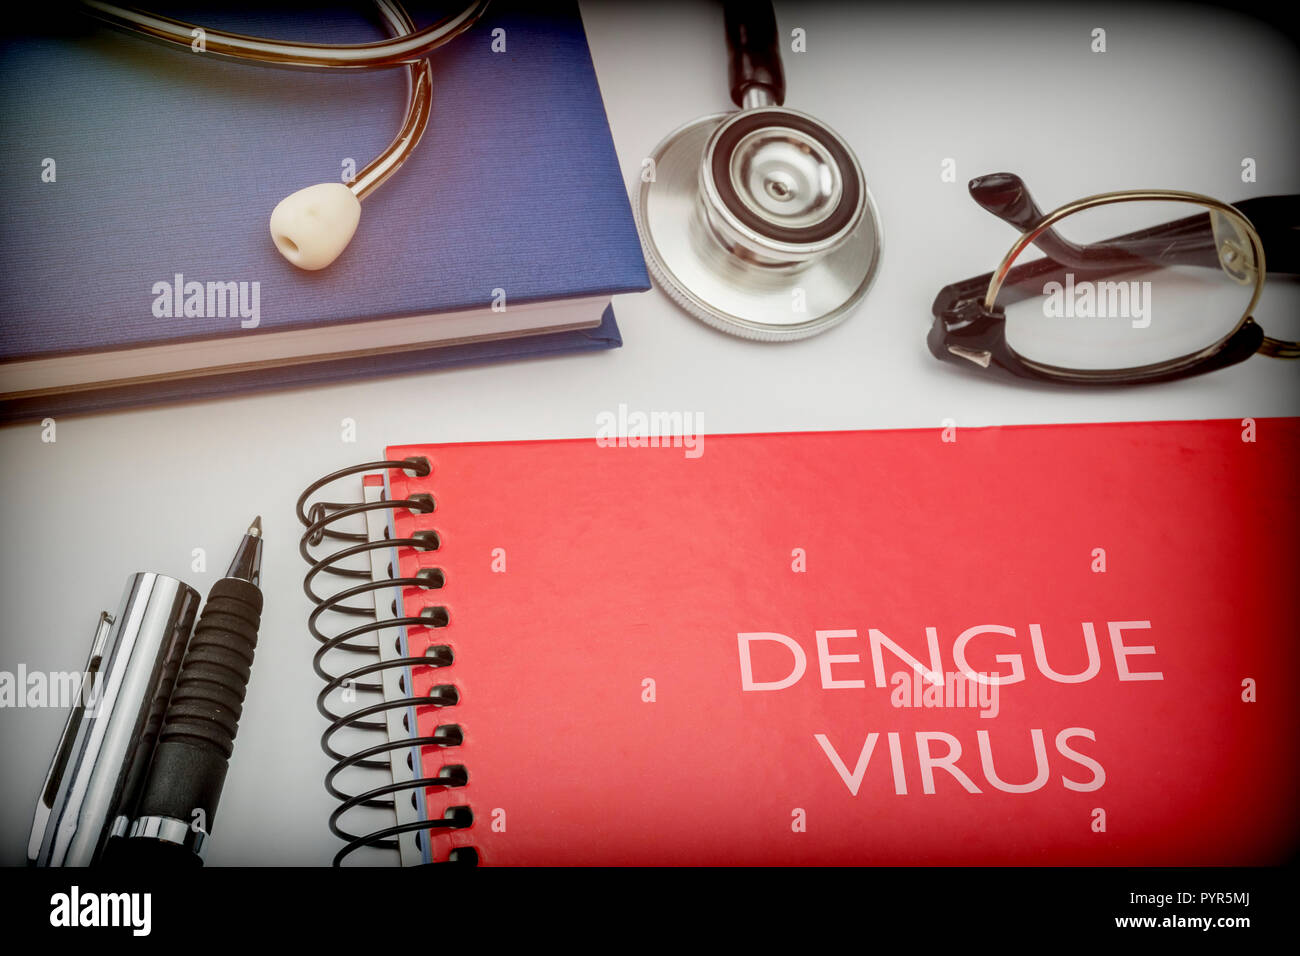 Livre rouge intitulé virus dengue le long avec de l'équipement médical, conceptual image Banque D'Images